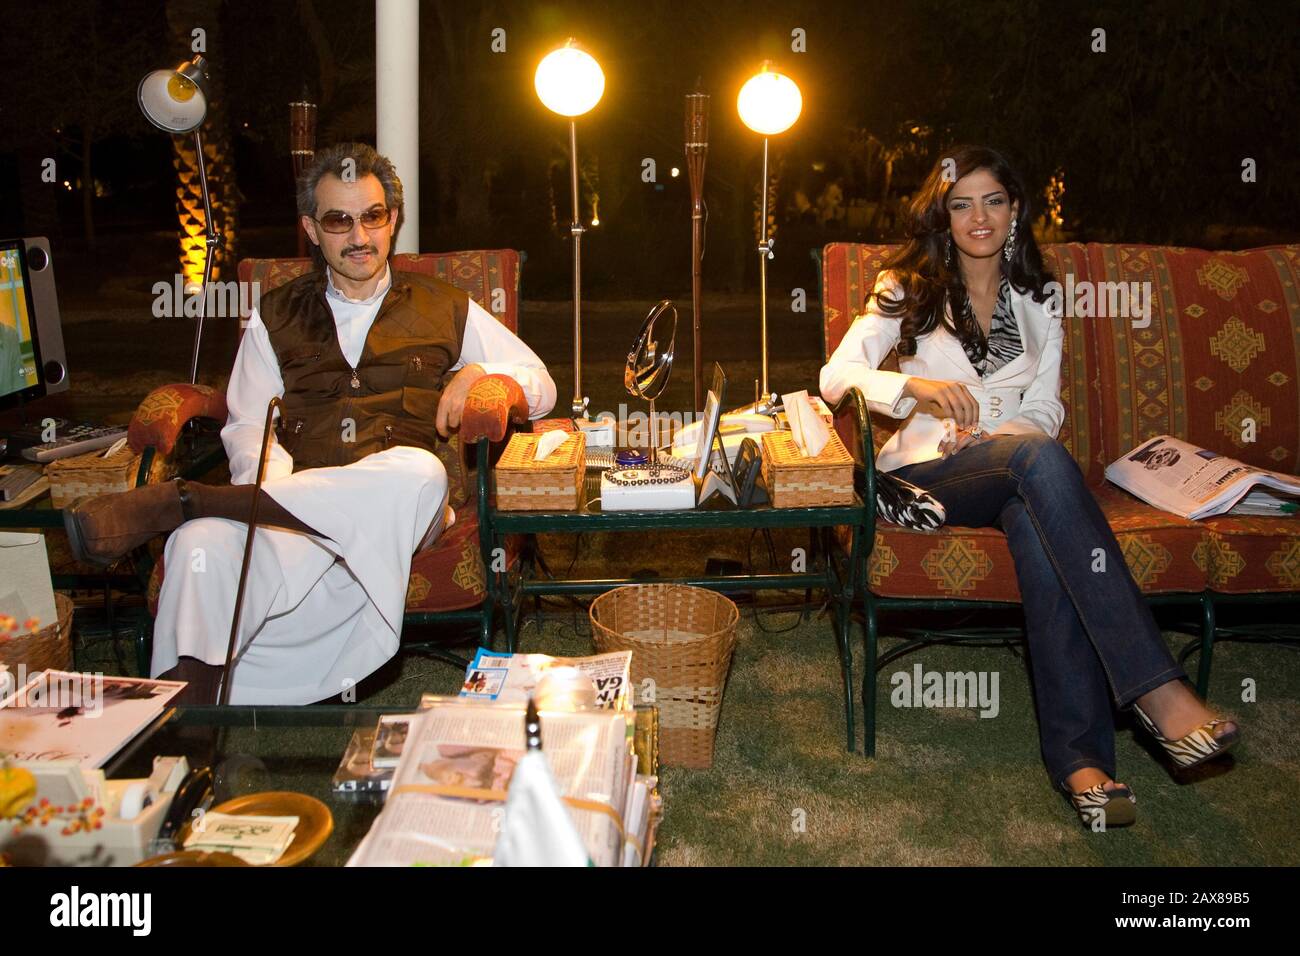 His Royal Highness Prince Al Waleed Bin Talal Al-Saud and Princess Ameerah enjoy a cool evening at his resort just outside Riyadh, Saudi Arabia. Stock Photo